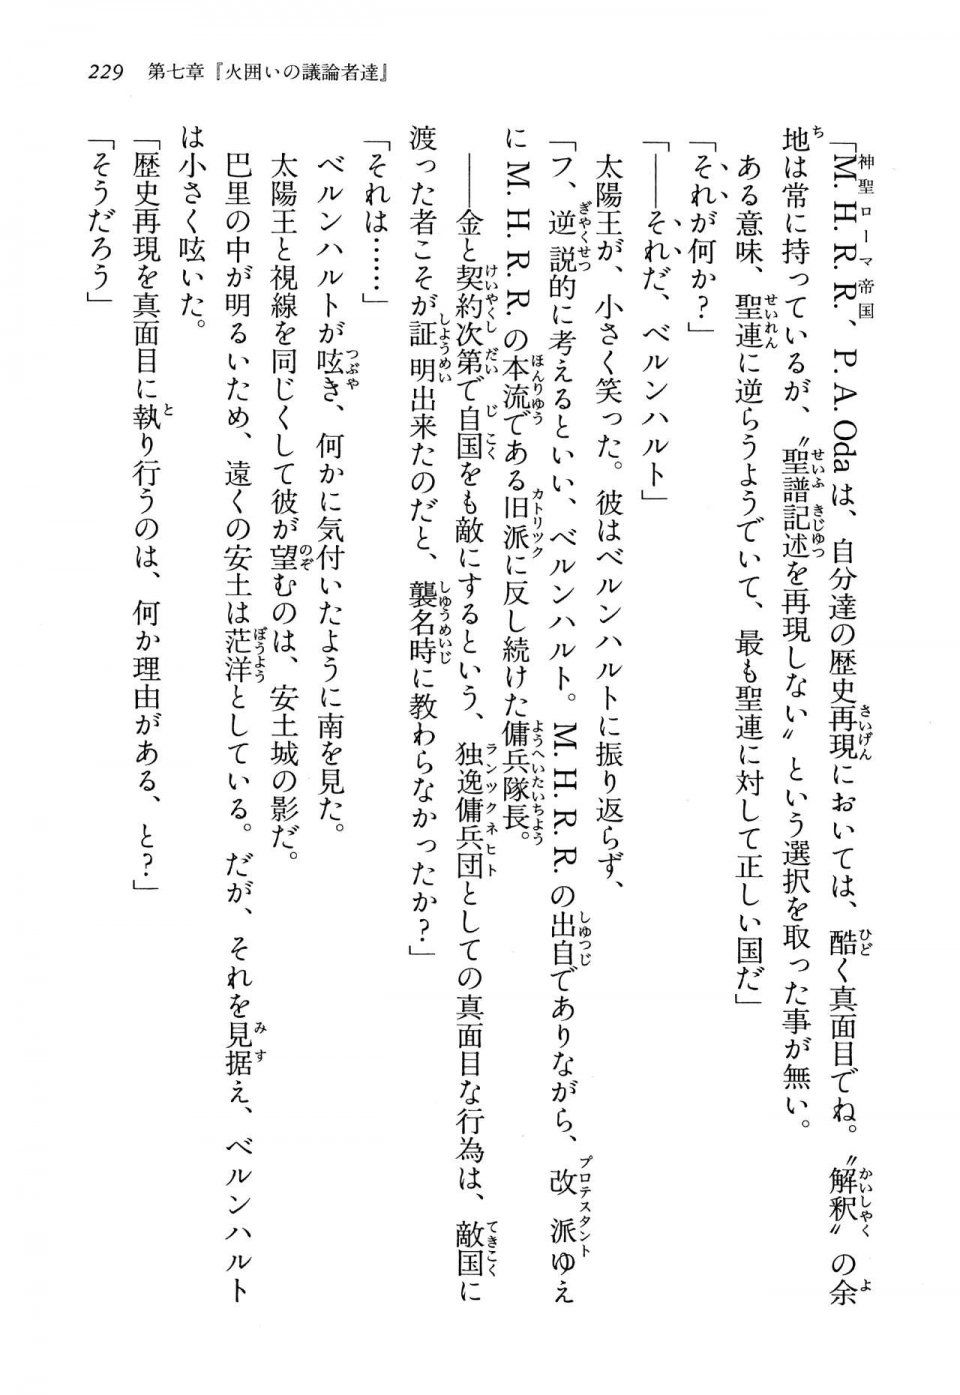 Kyoukai Senjou no Horizon LN Vol 13(6A) - Photo #229